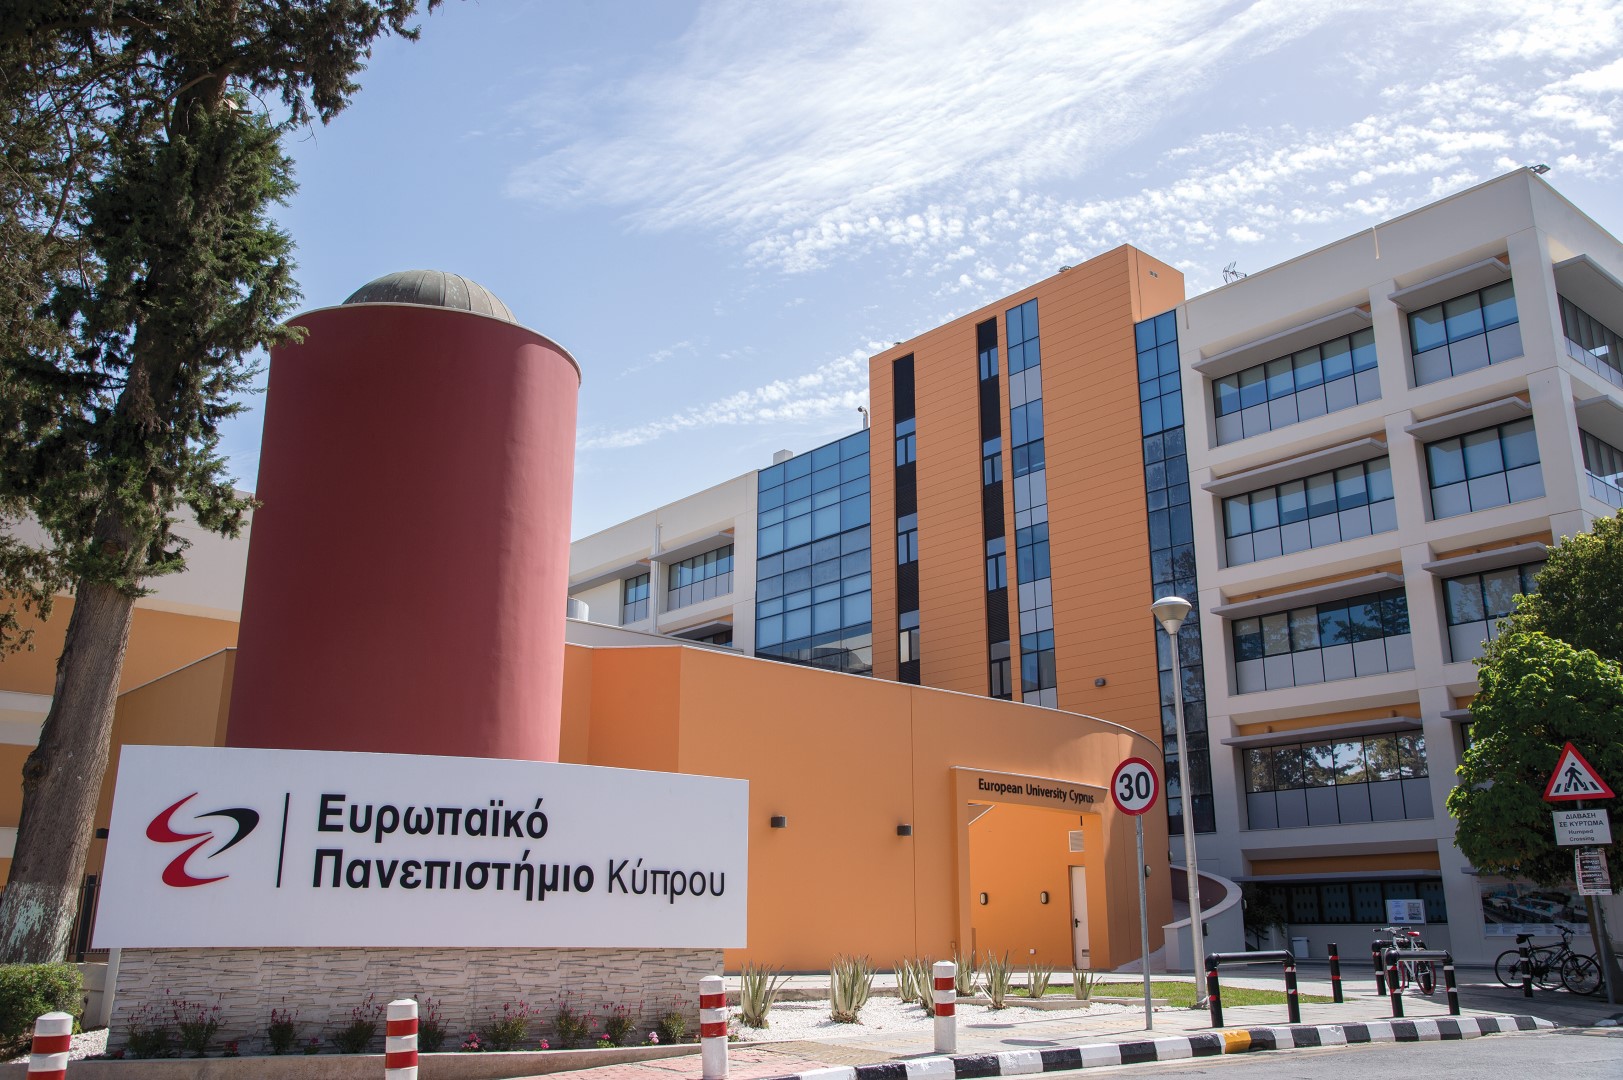 Διατροφή και Άσκηση στη Σαρκοπενία» από το Ευρωπαϊκό Πανεπιστήμιο Κύπρου